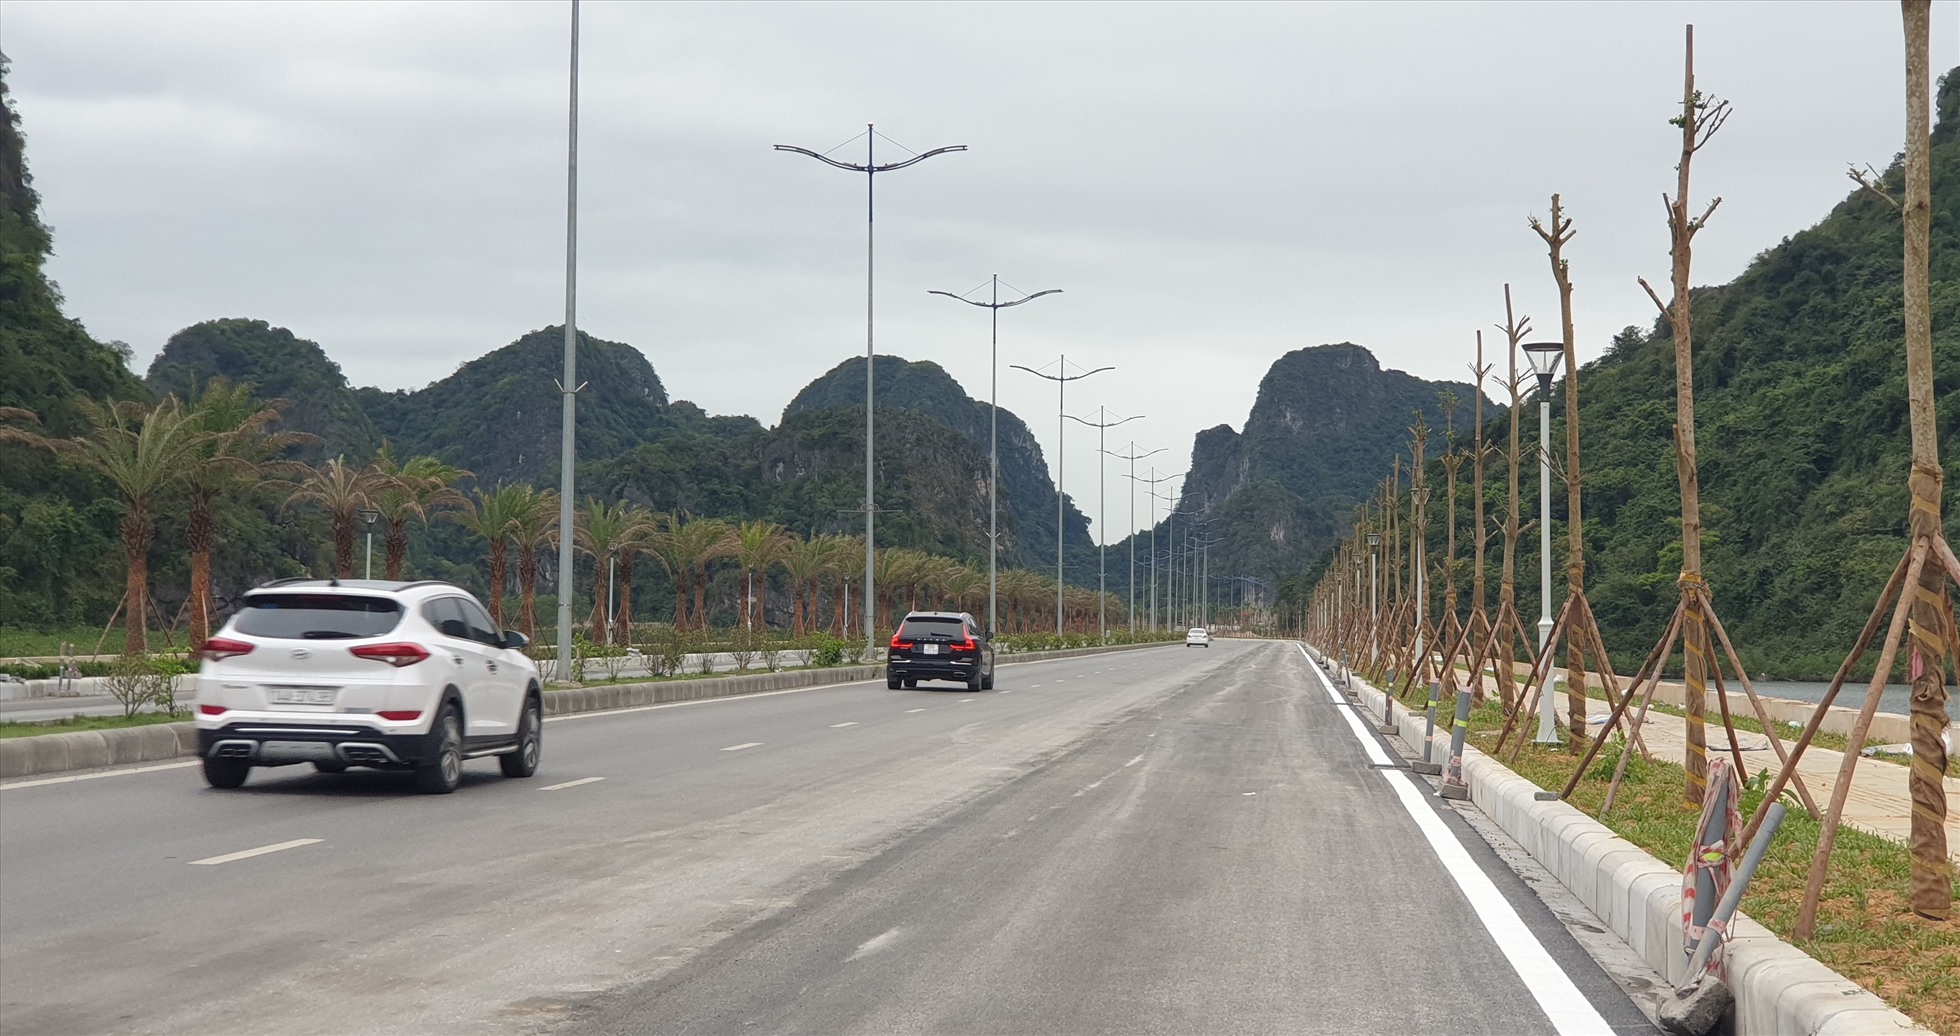 Đường ven biển Hạ Long - Cẩm Phả 6 làn xe. Ảnh: Nguyễn Hùng